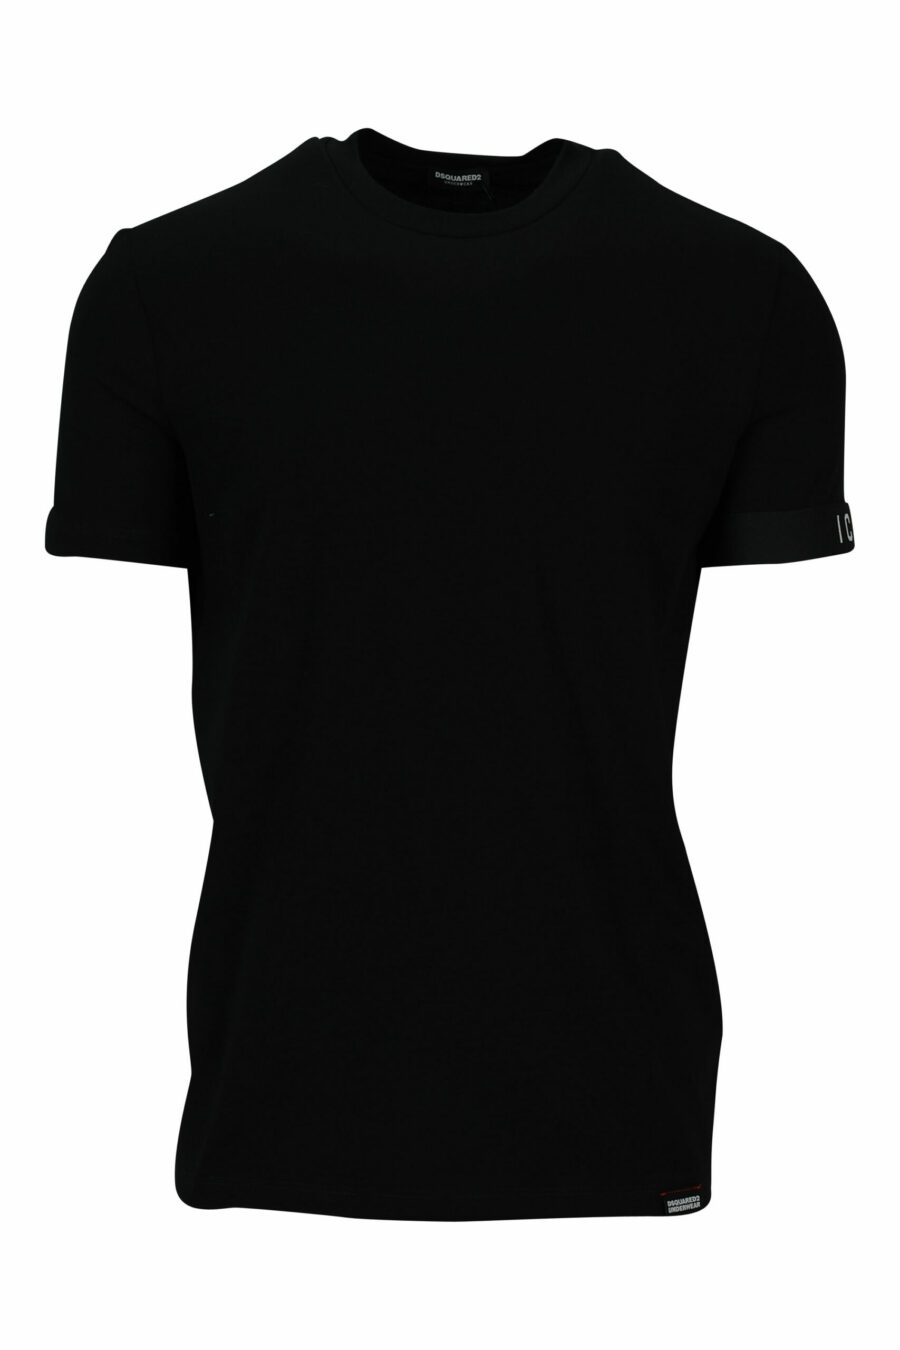 Camiseta negra con logo pequeño - 8032674767431 scaled